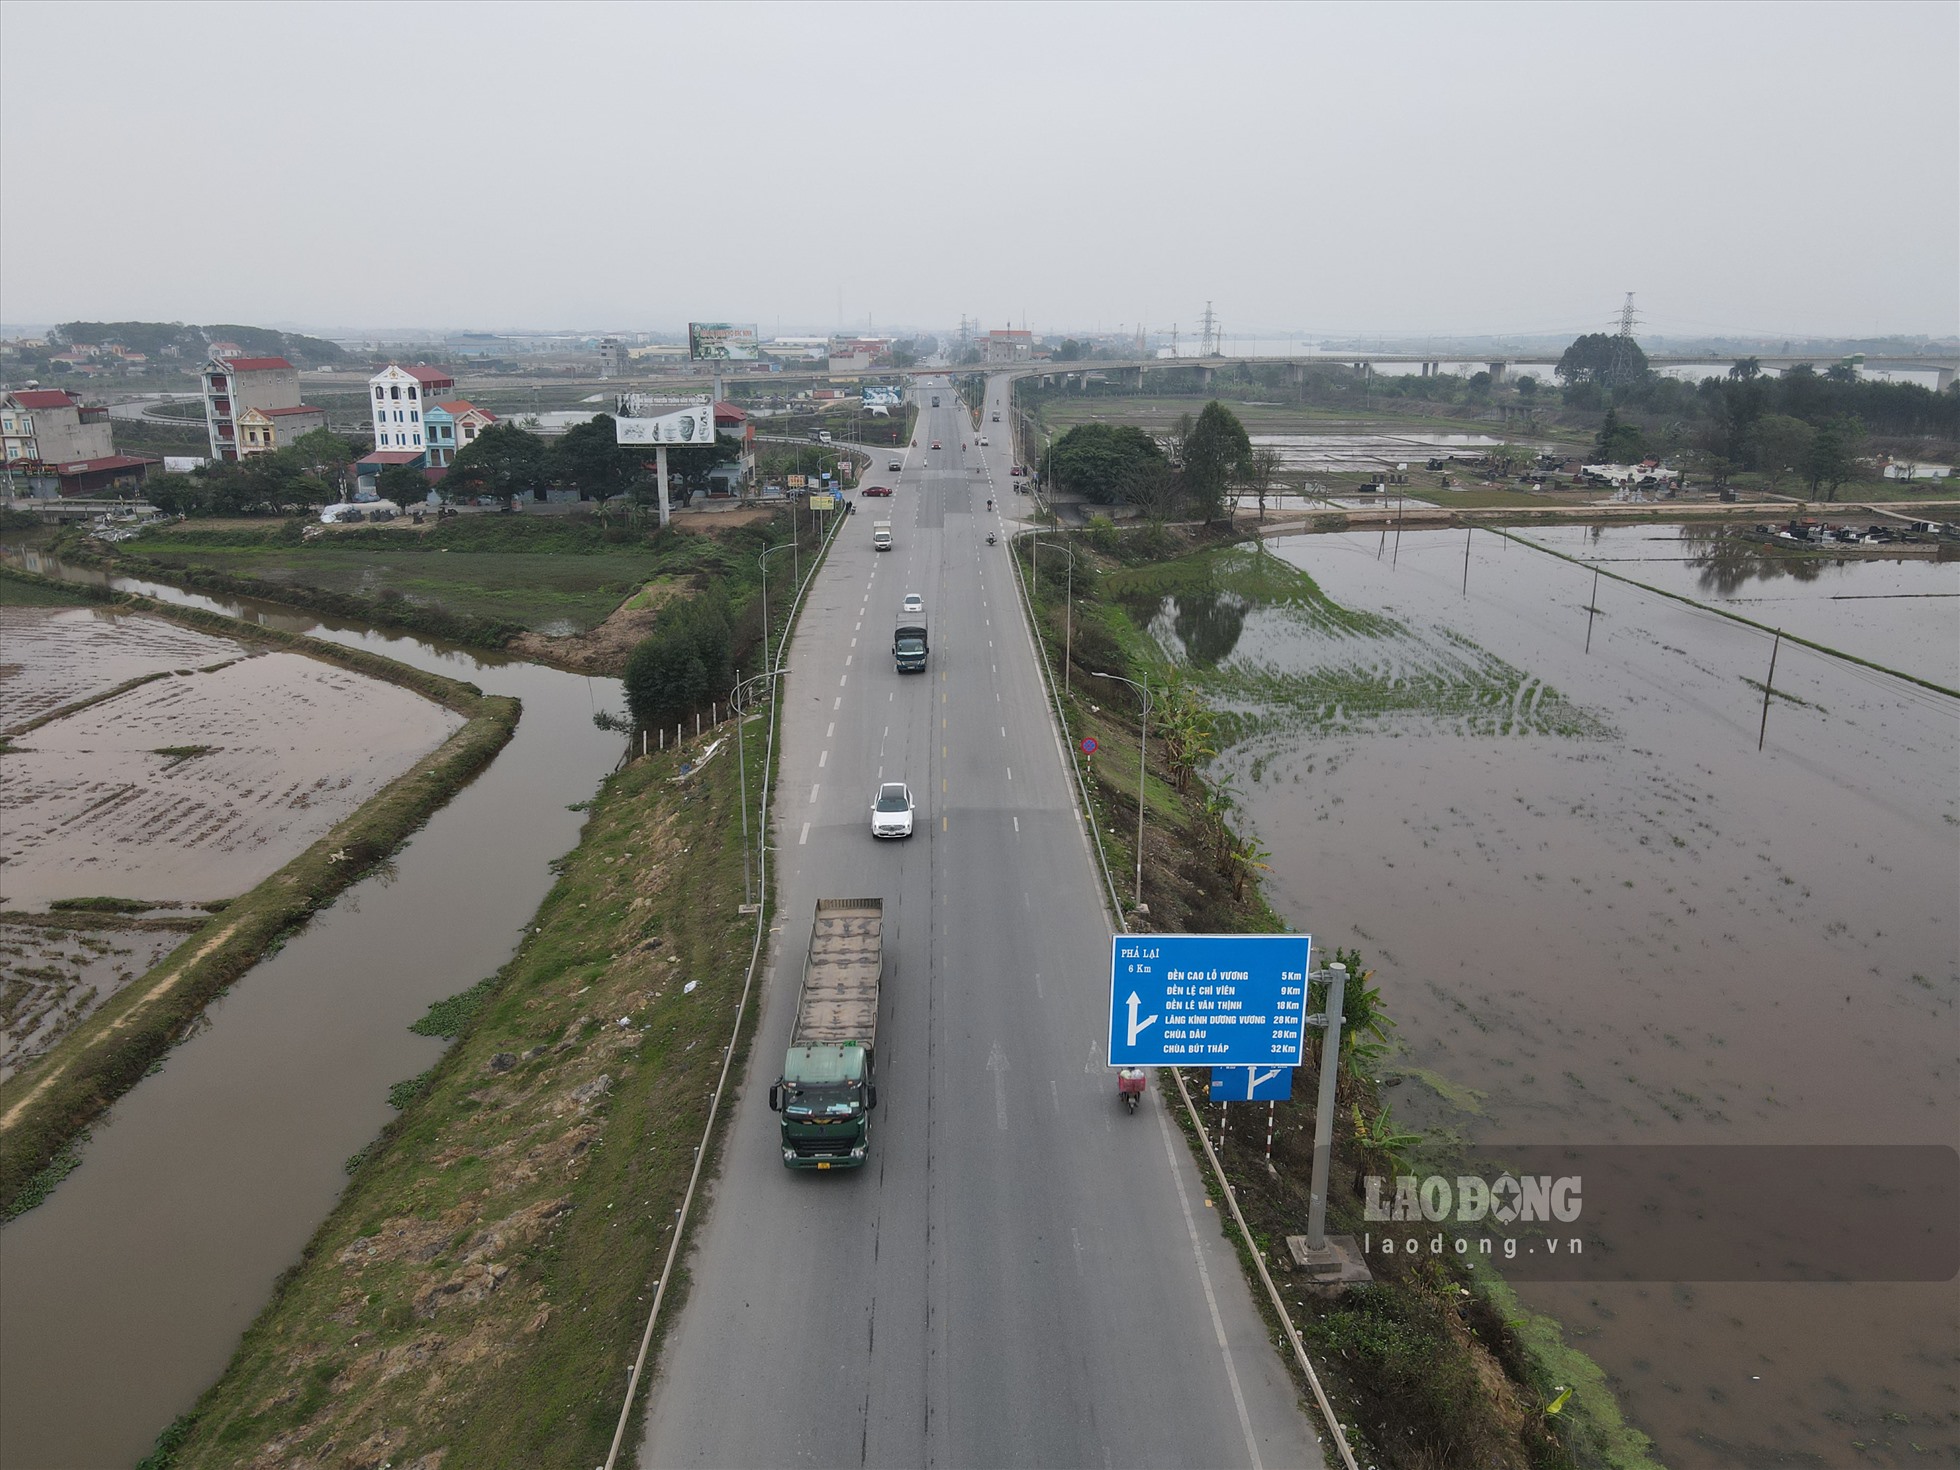 Ngoài ra, Quế Võ còn có quốc lộ 18 chạy qua. Đây là tuyến đường dài 317 km đi qua 4 tỉnh, thành phố: Hà Nội, Bắc Ninh, Hải Dương và Quảng Ninh.